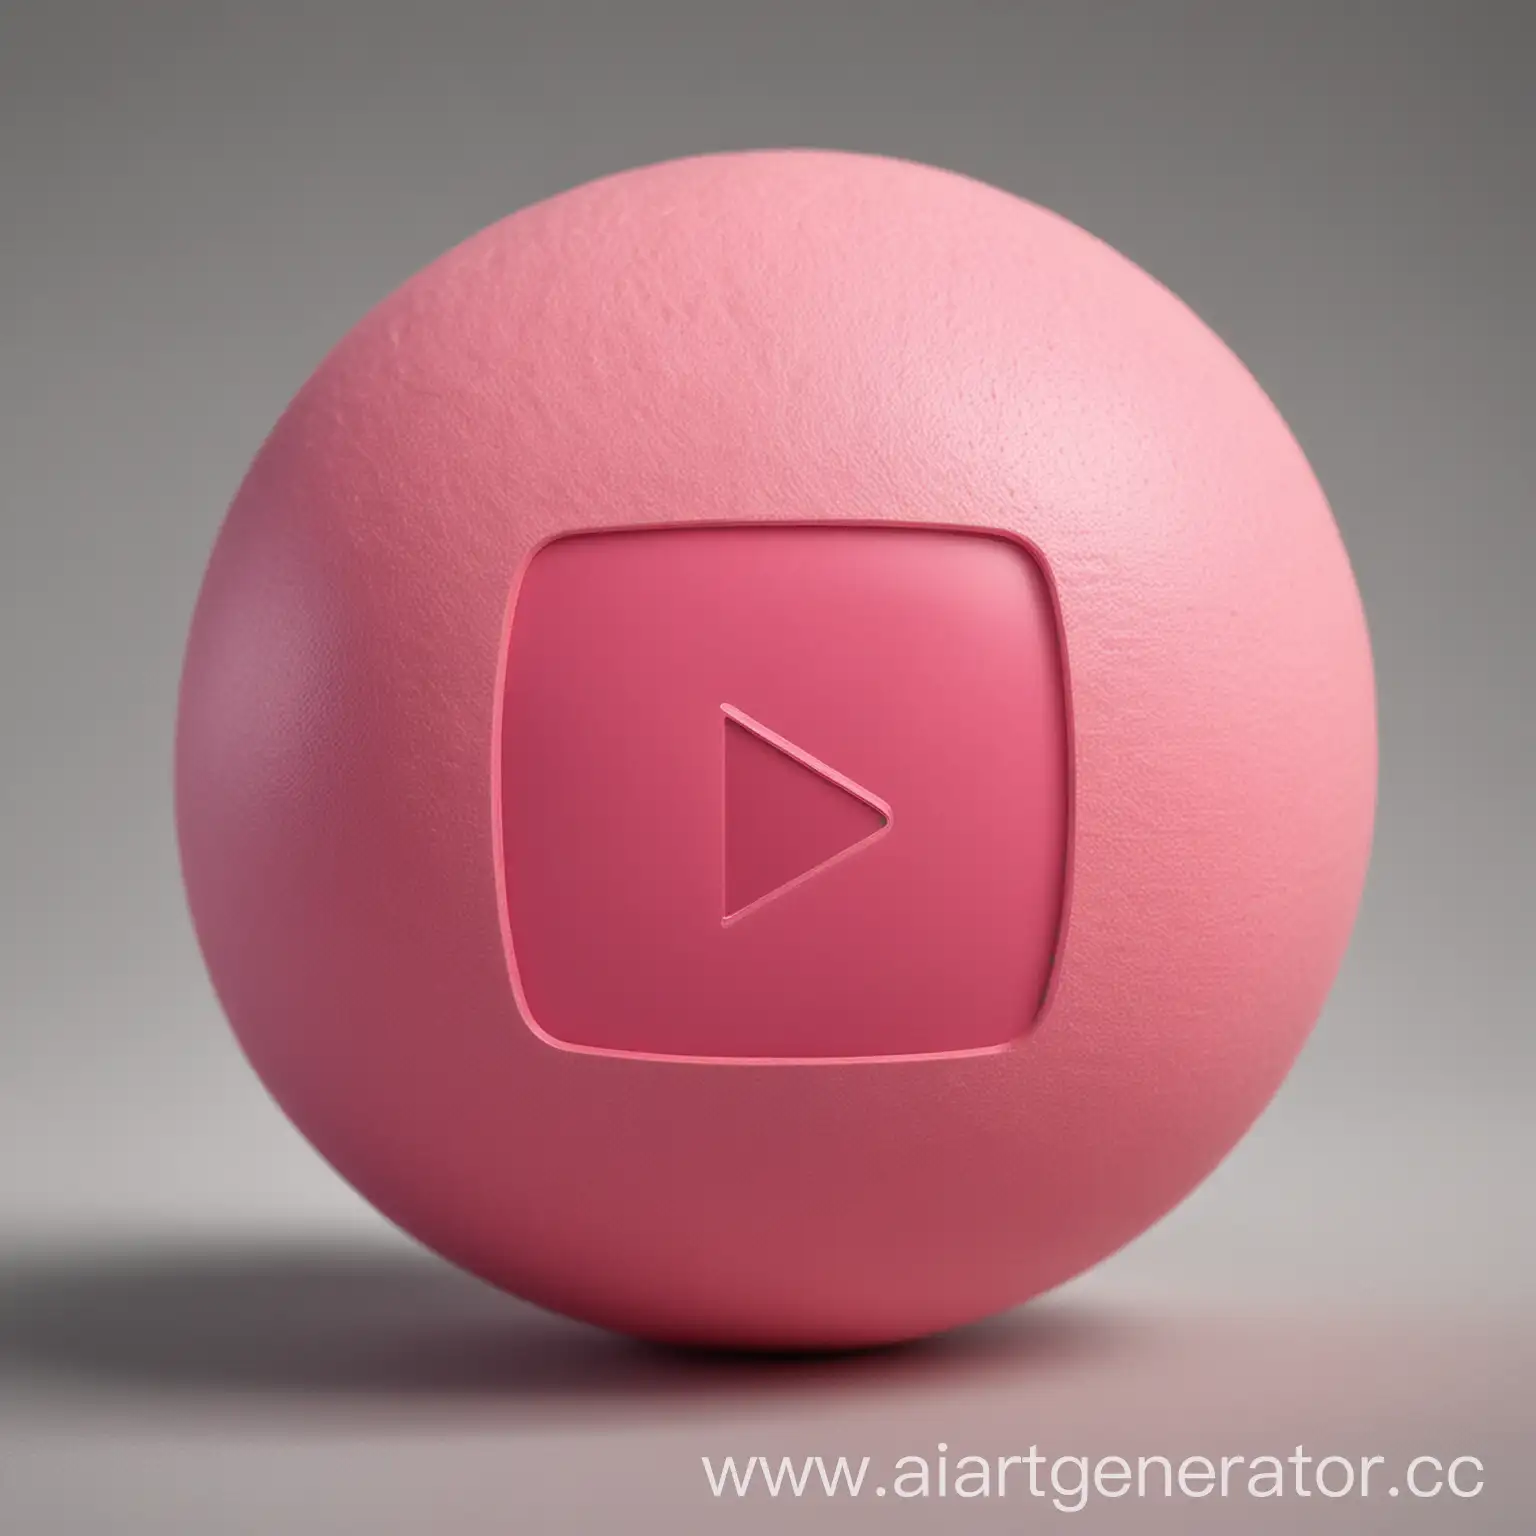 Шар розового цвета со значком YouTube